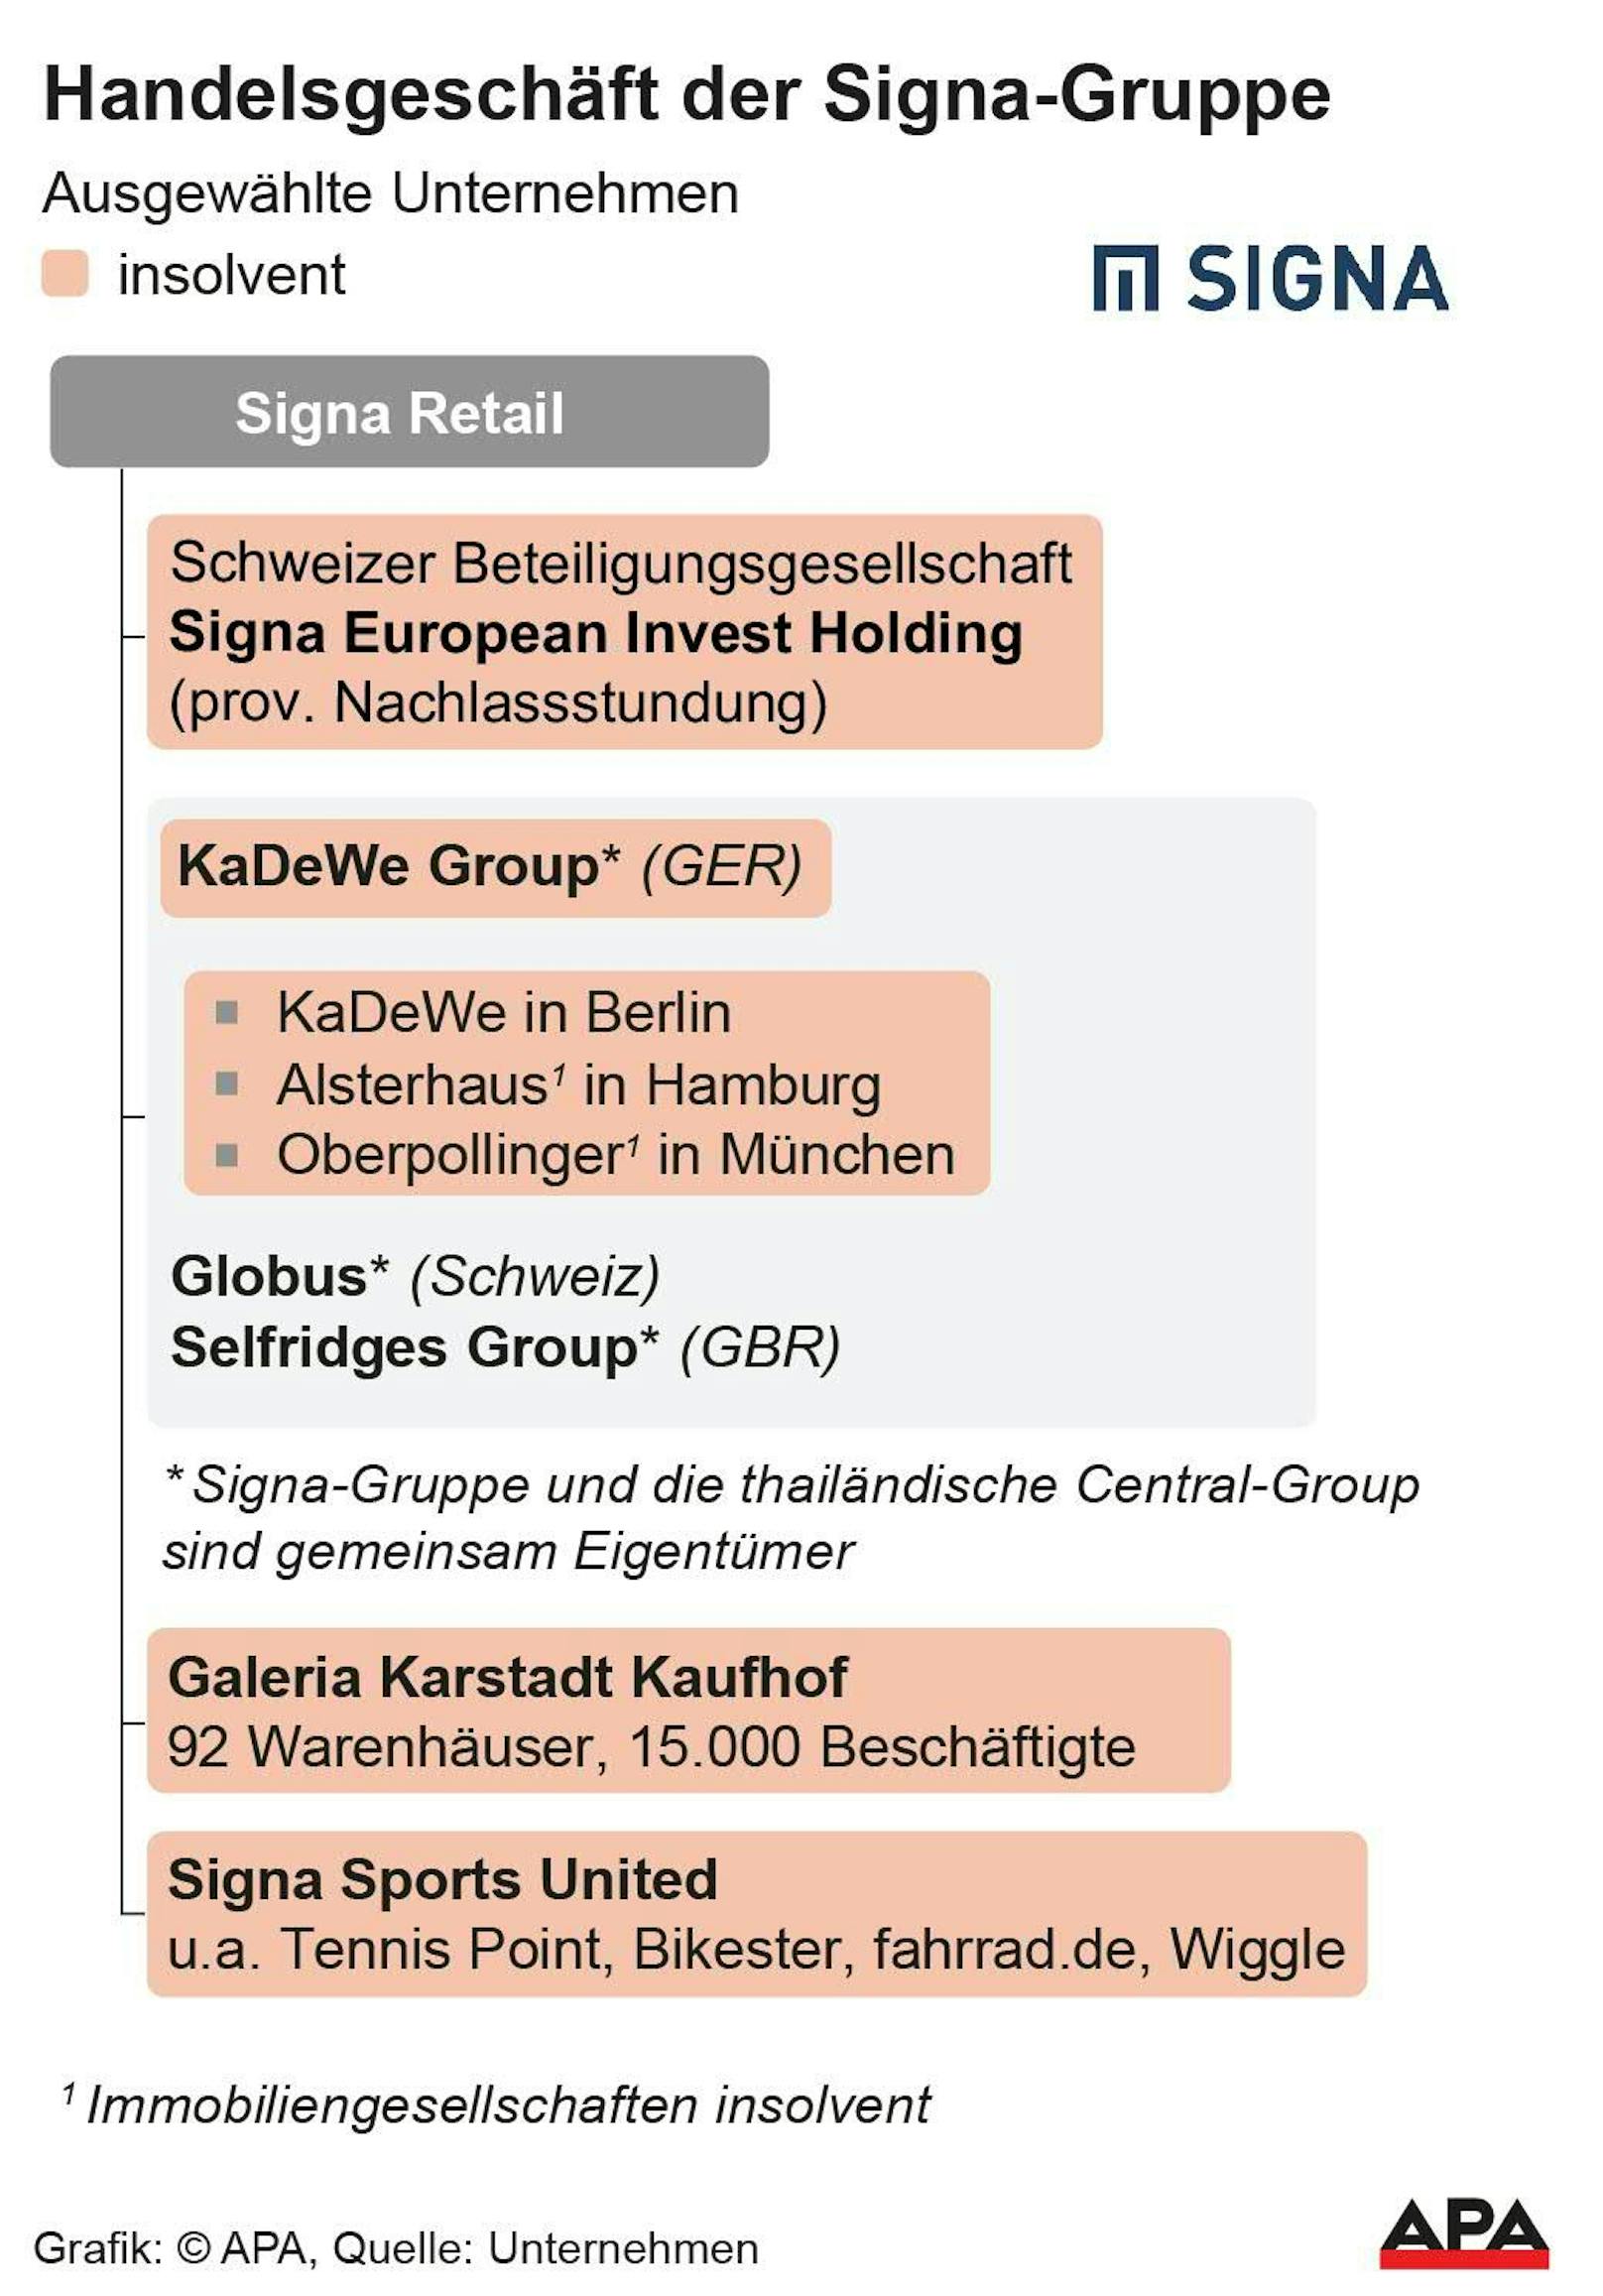 Ausgewählte Unternehmen und Gebäude des Signa-Konzerns; insolvente Unternehmen rot eingefärbt.